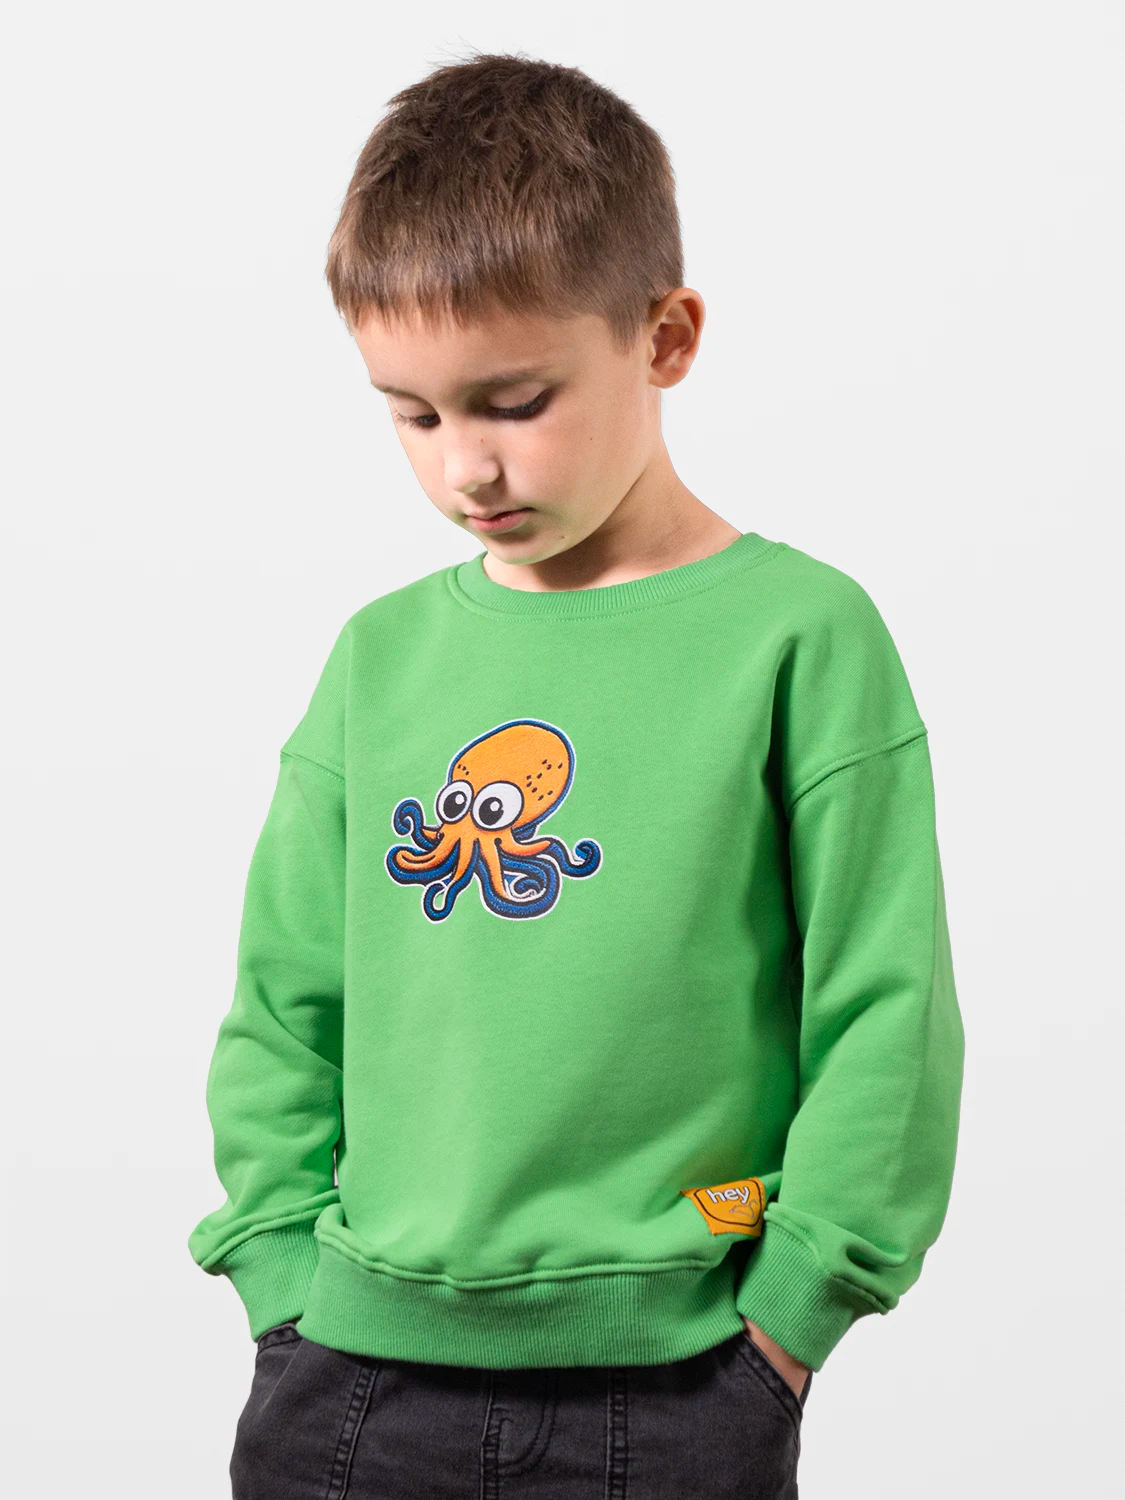 Octopus Perfect Green Sweatshirt